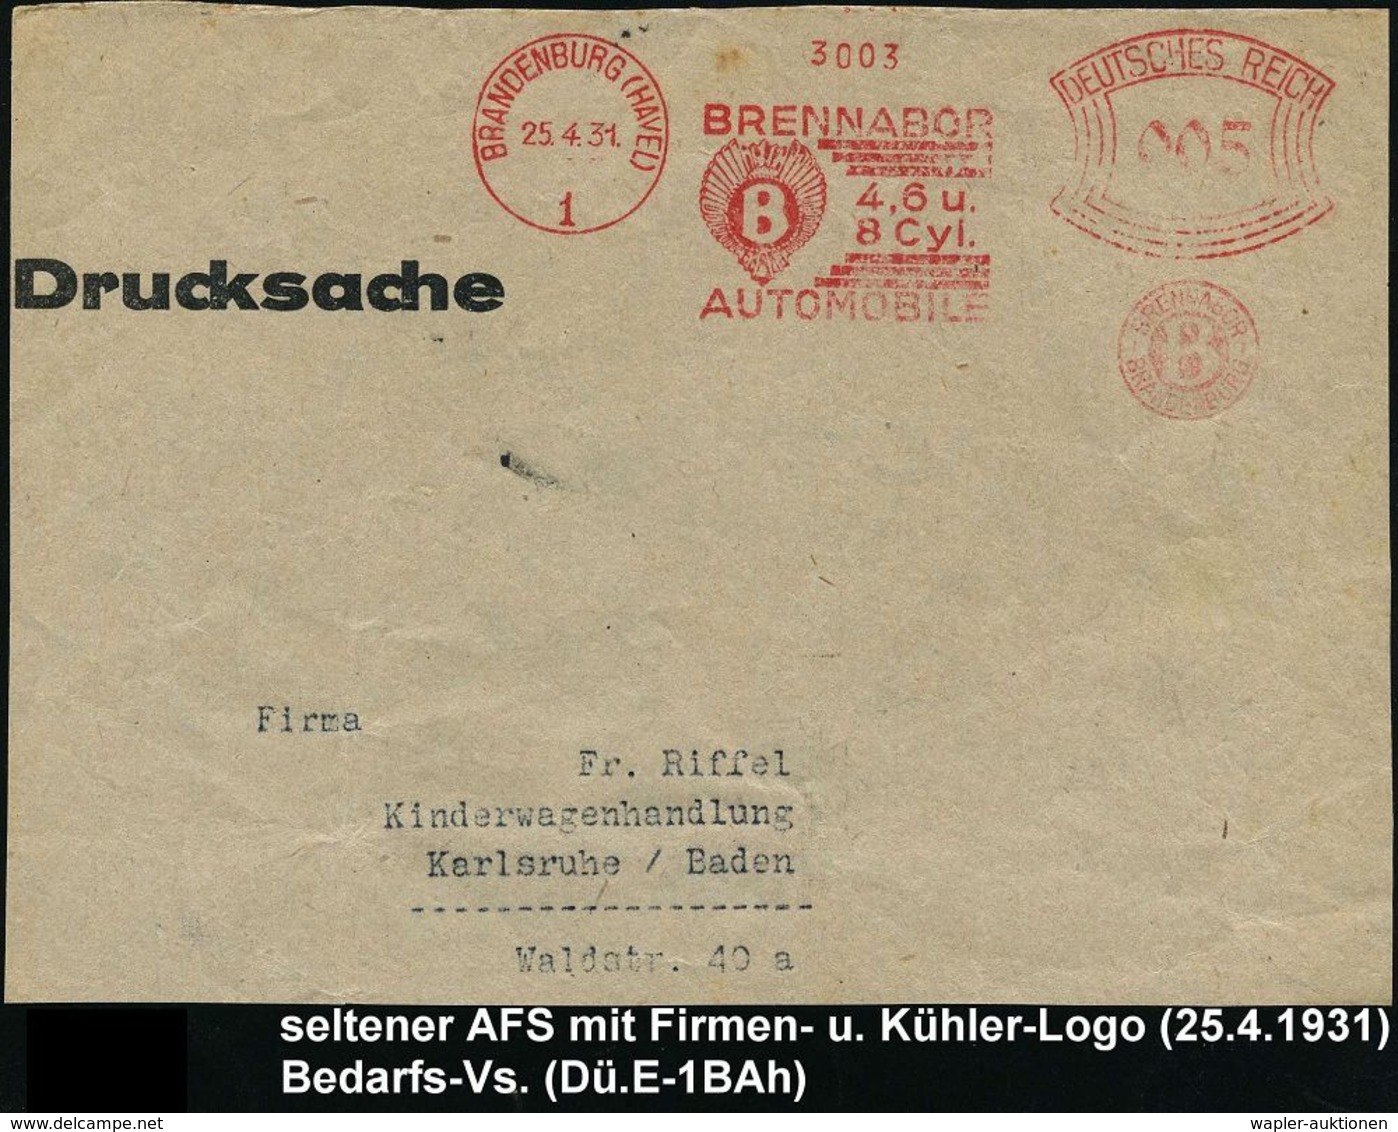 AUTOMOBIL-HERSTELLER DEUTSCHLAND : BRANDENBURG (HAVEL)/ 1/ BRENNABOR/ 4,6 U./ 8 Cyl./ AUTOMOBILE.. 1931 (25.4.) Seltener - Voitures